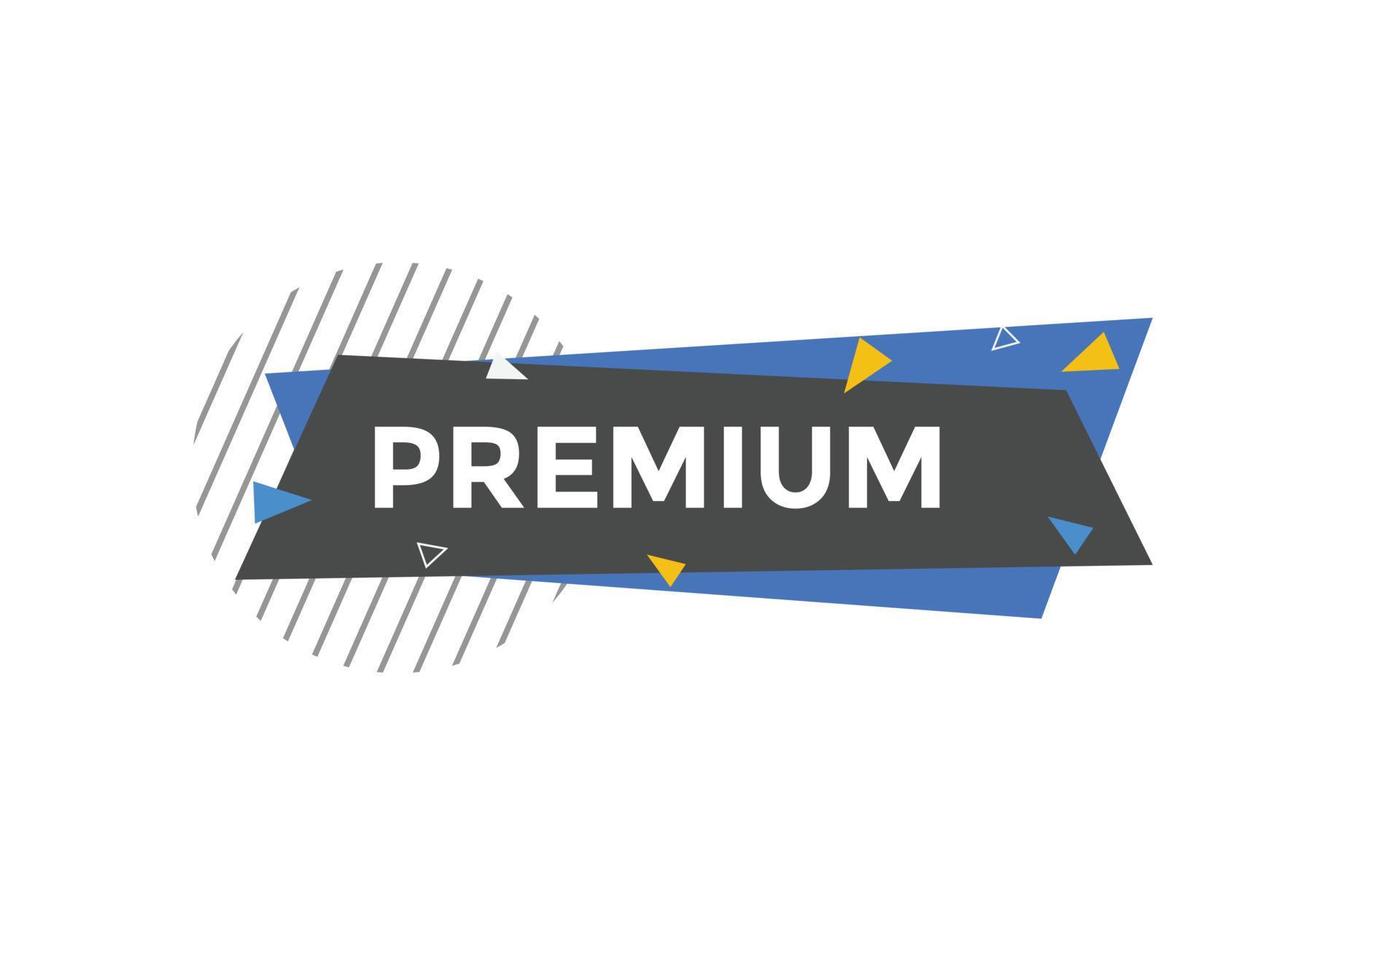 Premium-Schaltfläche. Sprechblase. Premium-buntes Web-Banner. Vektor-Illustration. Vorlage für Premium-Label-Schilder vektor